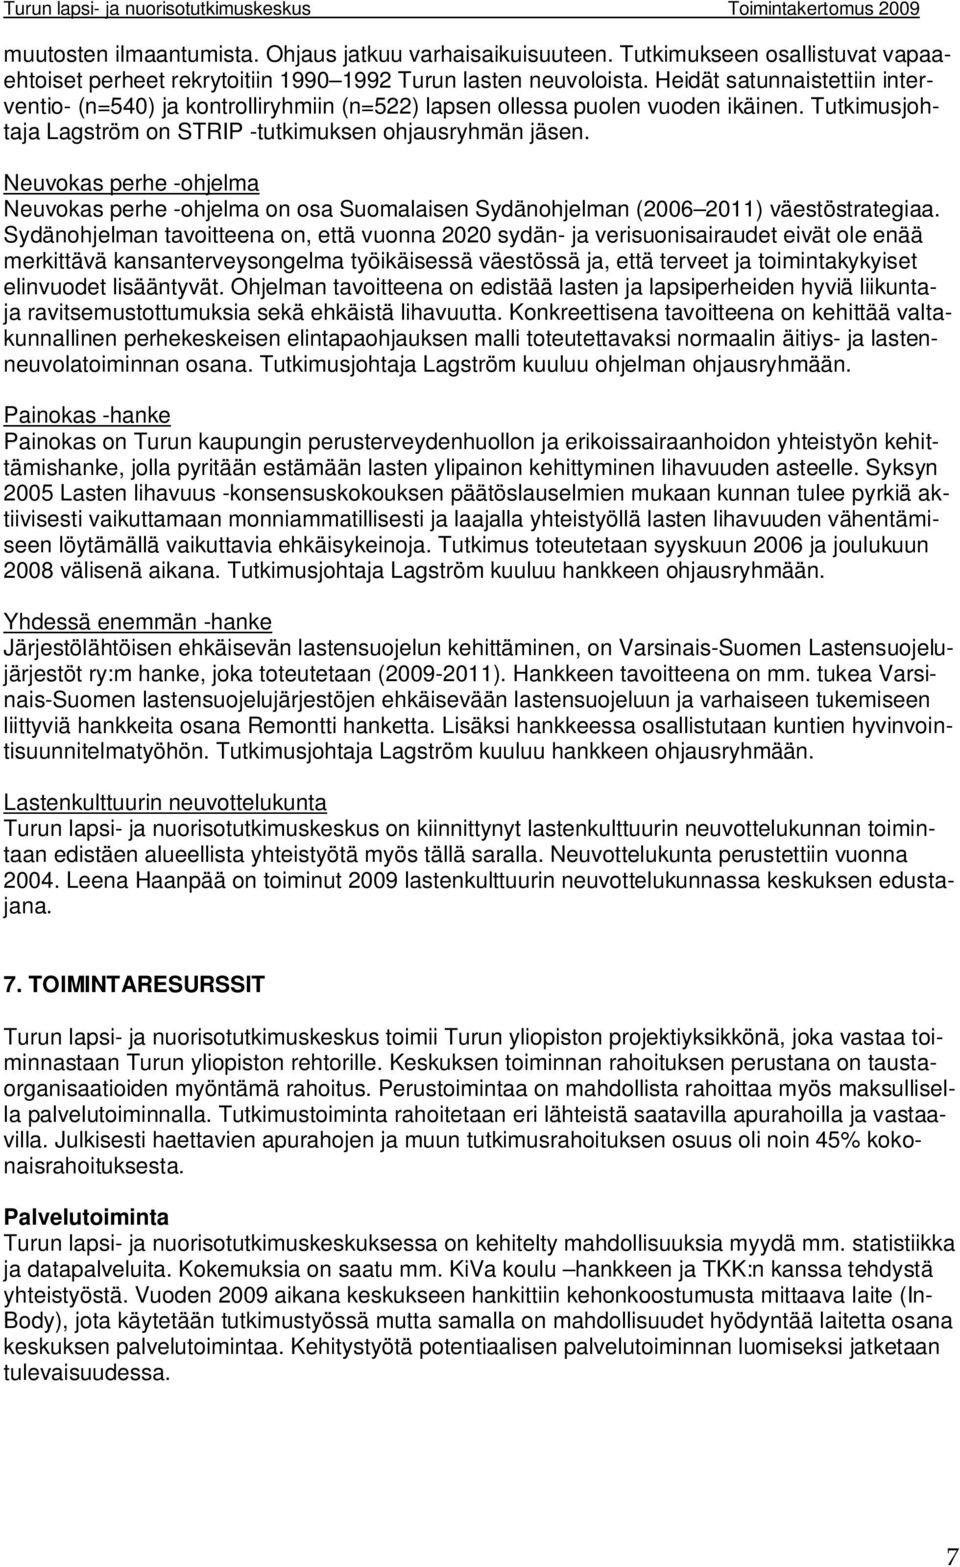 Neuvokas perhe -ohjelma Neuvokas perhe -ohjelma on osa Suomalaisen Sydänohjelman (2006 2011) väestöstrategiaa.